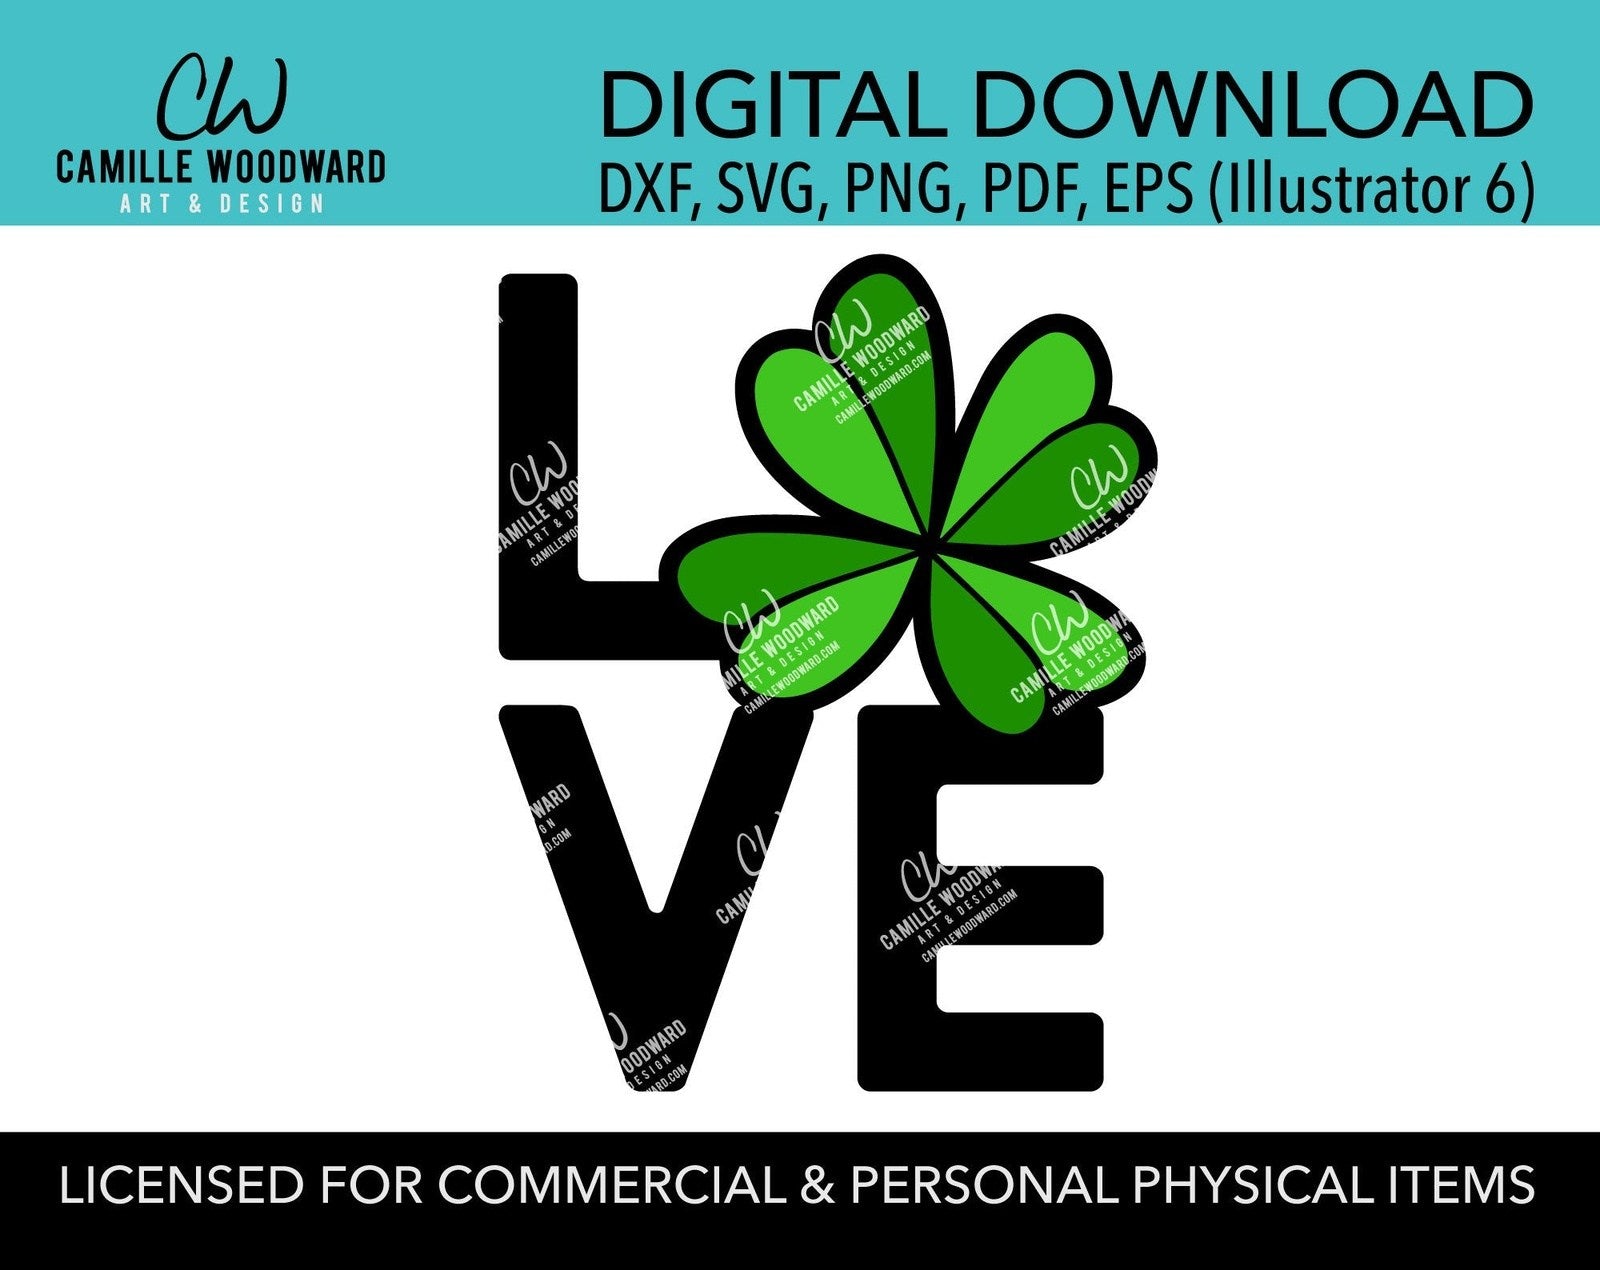 Love SVG, St Patrick's Day SVG, Shamrock SVG Cricut, Four Leaf Clover - Sublimation Digital Download Transparent